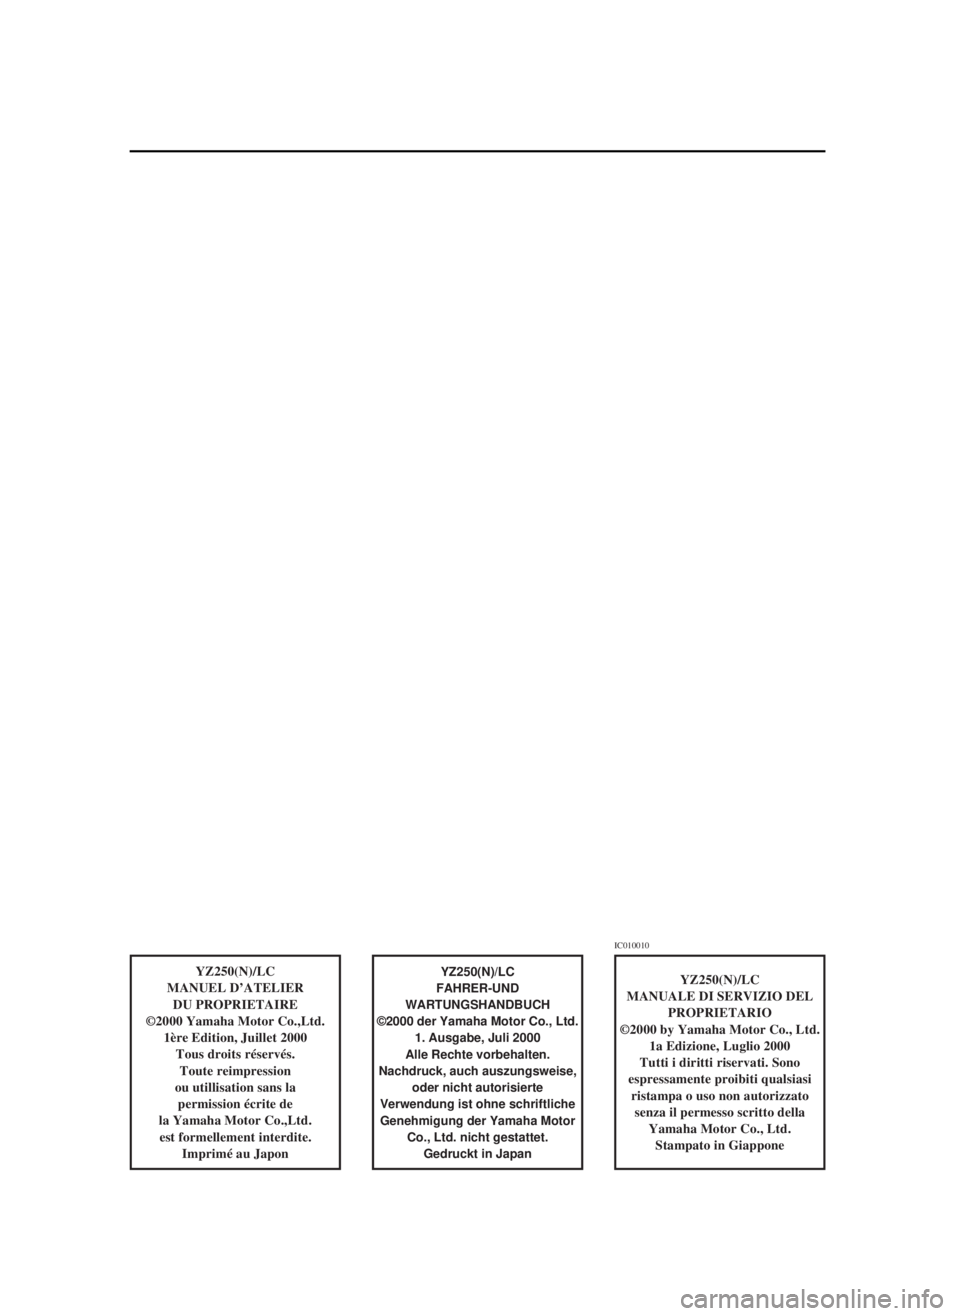 YAMAHA YZ250LC 2001  Owners Manual YZ250(N)/LC
MANUEL D’ATELIER
DU PROPRIETAIRE
©2000 Yamaha Motor Co.,Ltd.
1ère Edition, Juillet 2000
Tous droits réservés.
Toute reimpression
ou utillisation sans la 
permission écrite de
la Yam